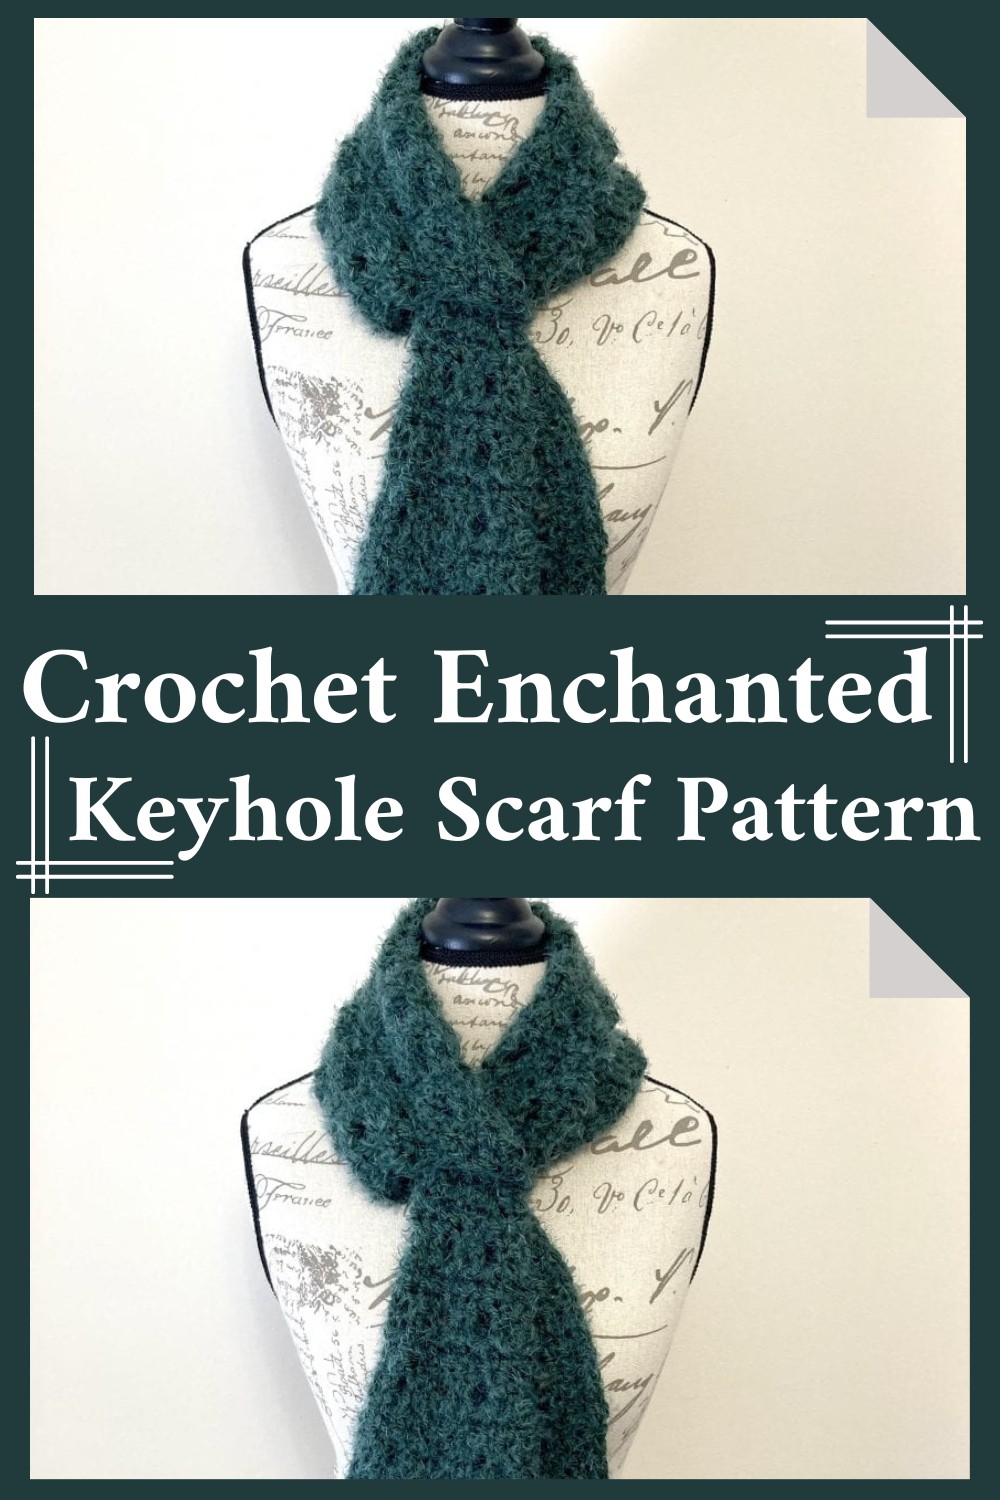 Crochet Keyhole Scarf Pattern Free